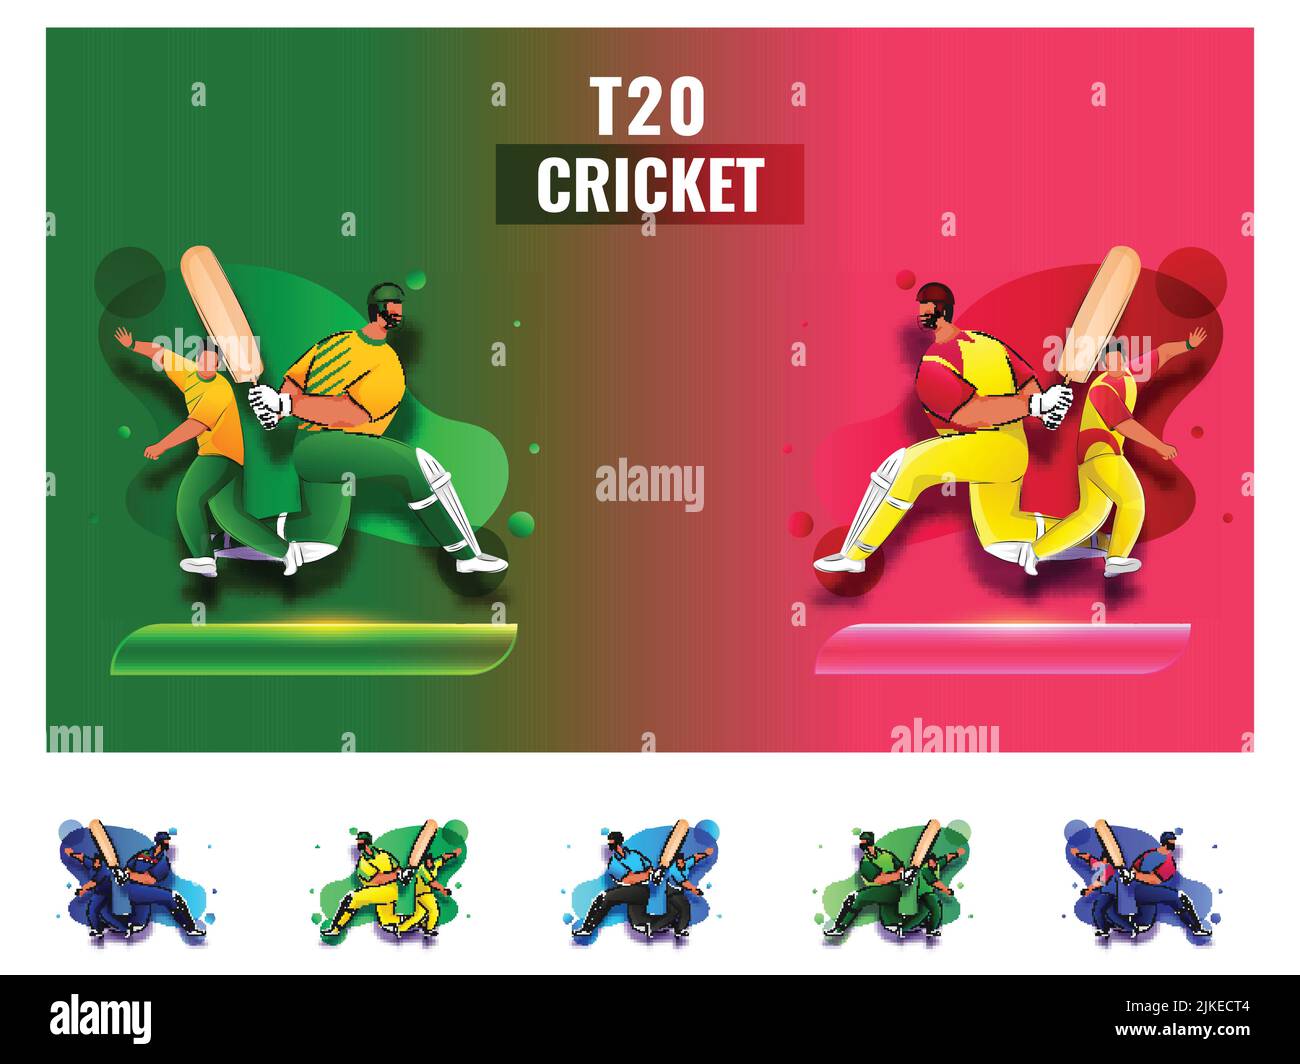 T20 Cricket Match Teilnehmende Länder Teams mit Südafrika vs West Indies Highlights auf grünem und rotem Hintergrund. Stock Vektor